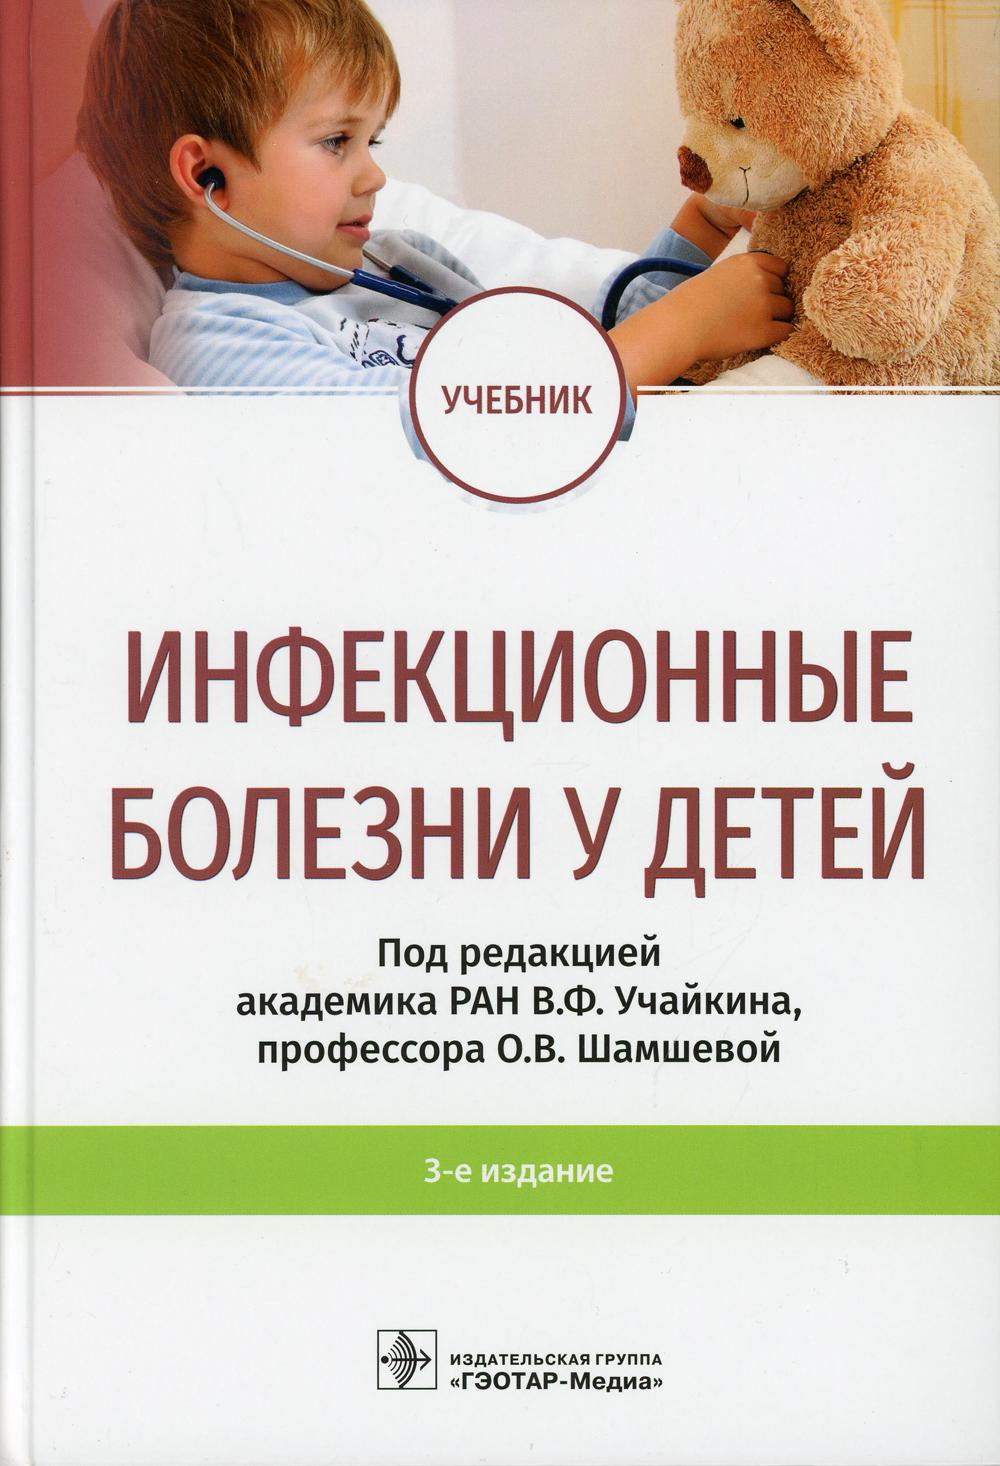 фото Книга инфекционные болезни у детей: учебник. 3-е изд гэотар-медиа